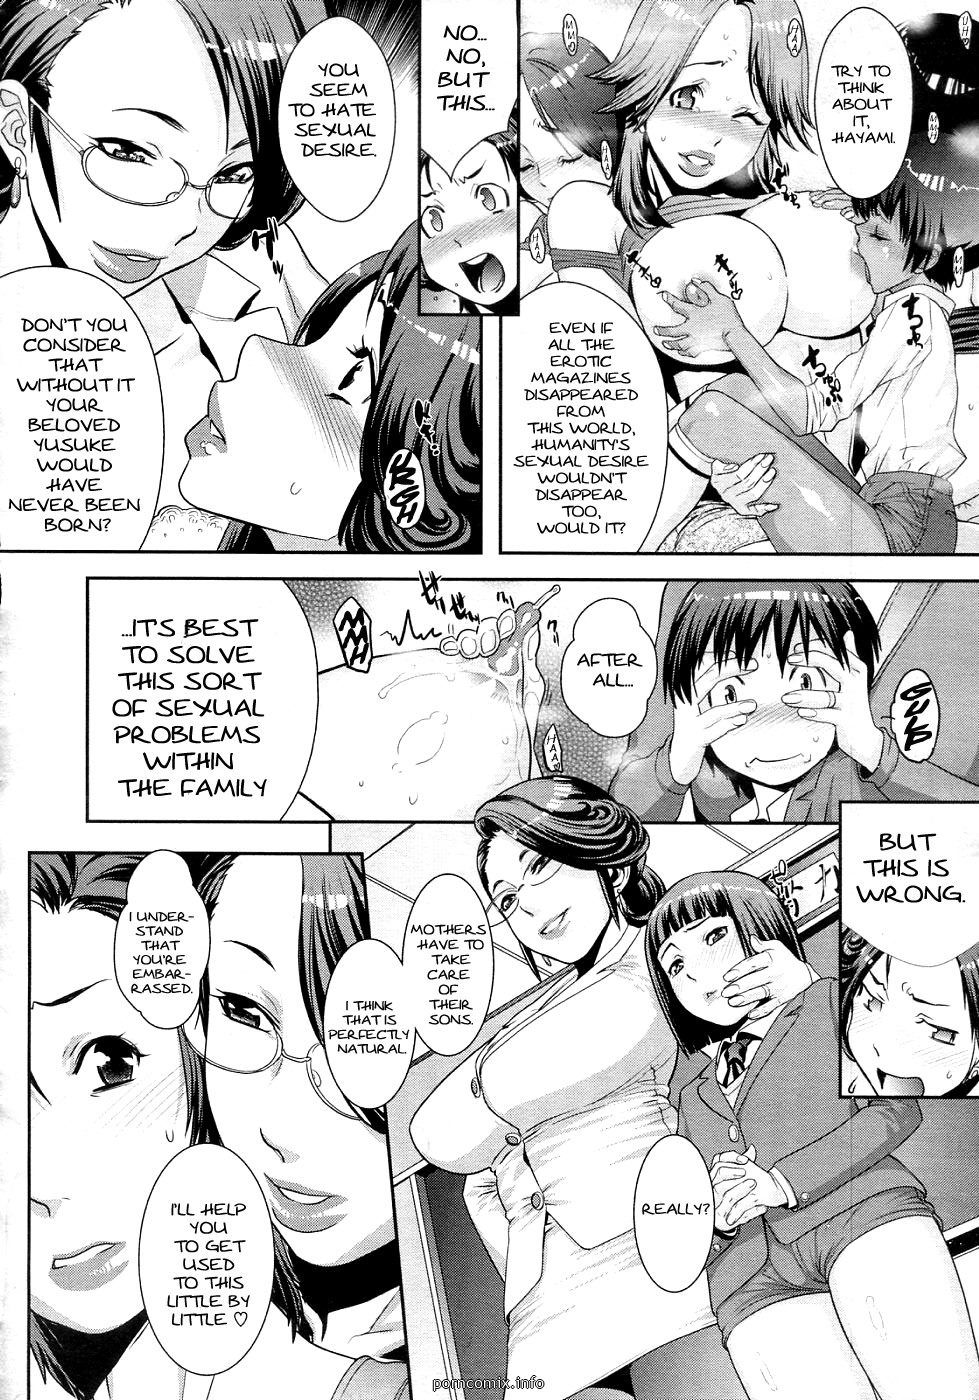 hentai mothers lato dopo scuola mogli page 1